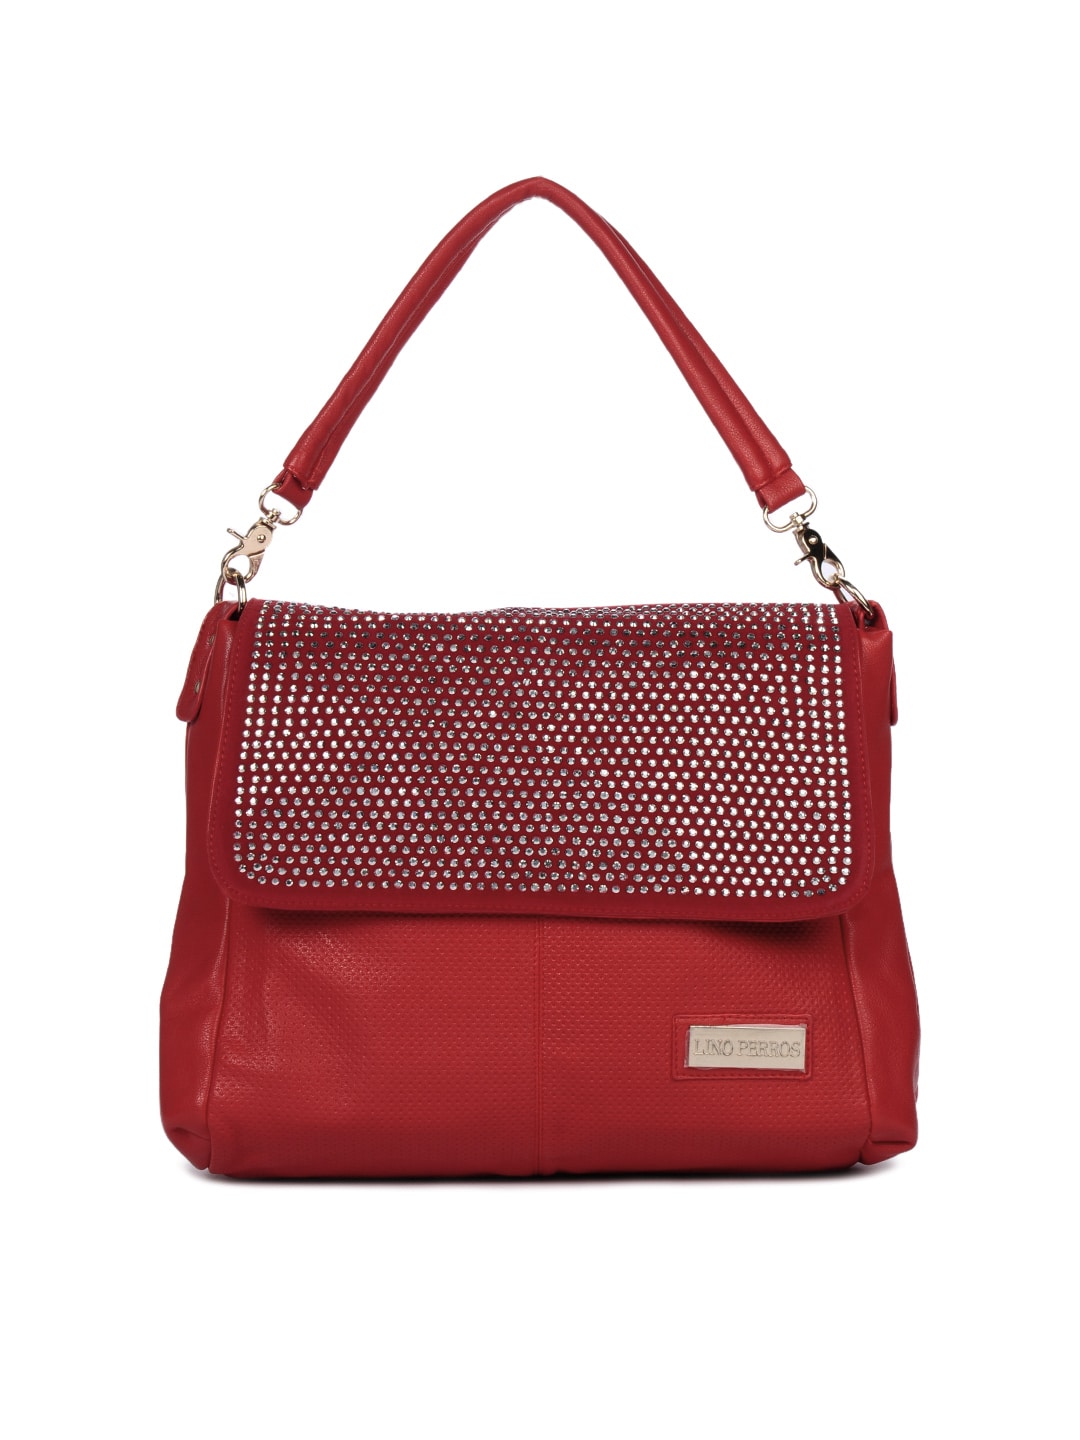 Lino Perros Women Red Handbag